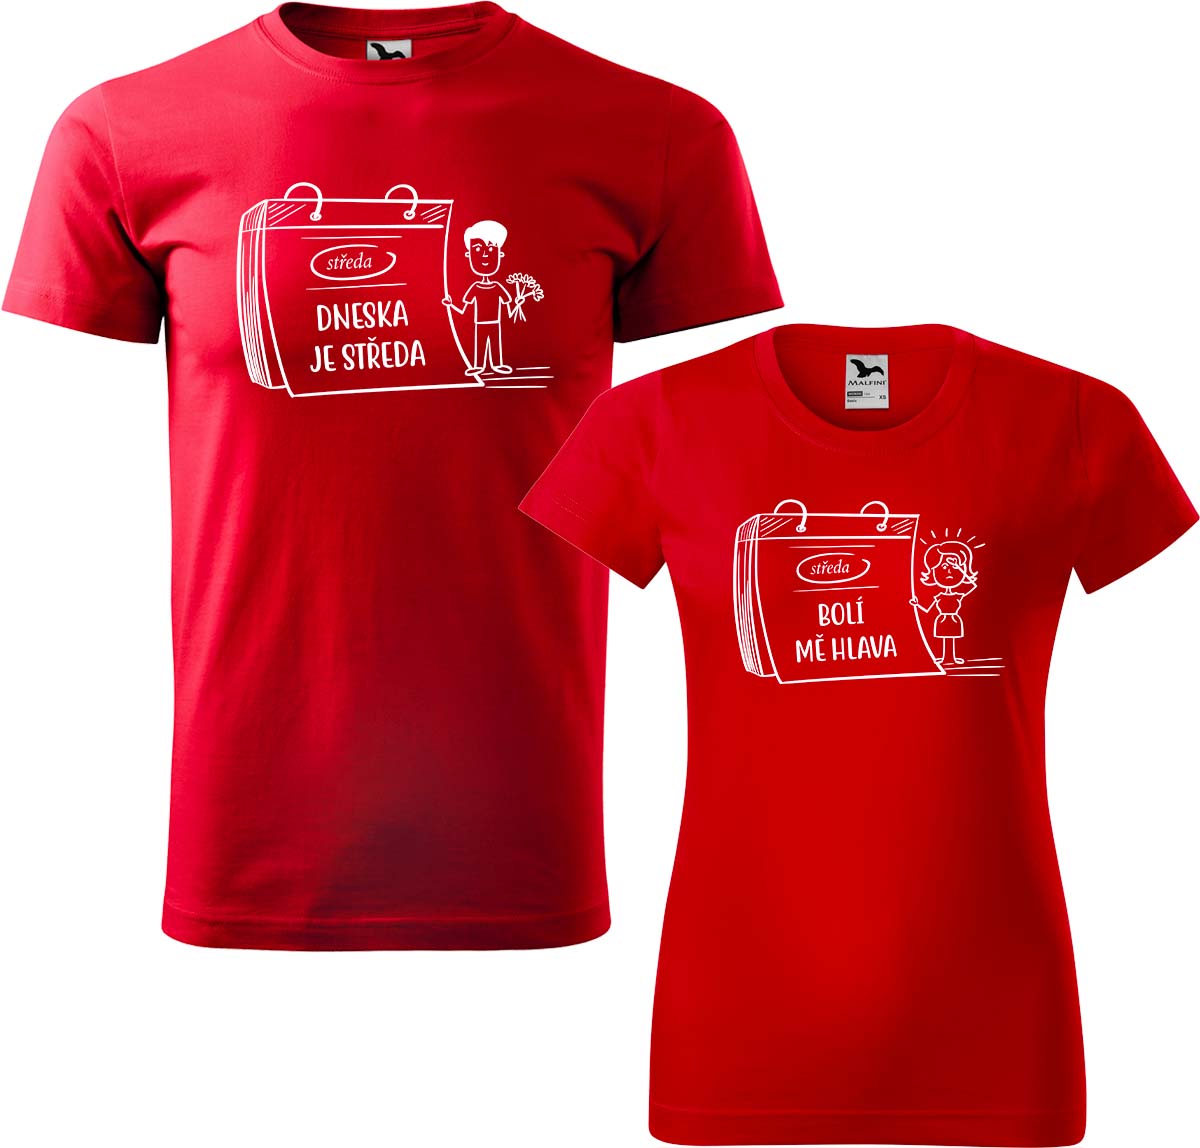 Trička pro páry - Dneska je středa Barva: Červená (07), Velikost dámské tričko: S, Velikost pánské tričko: M